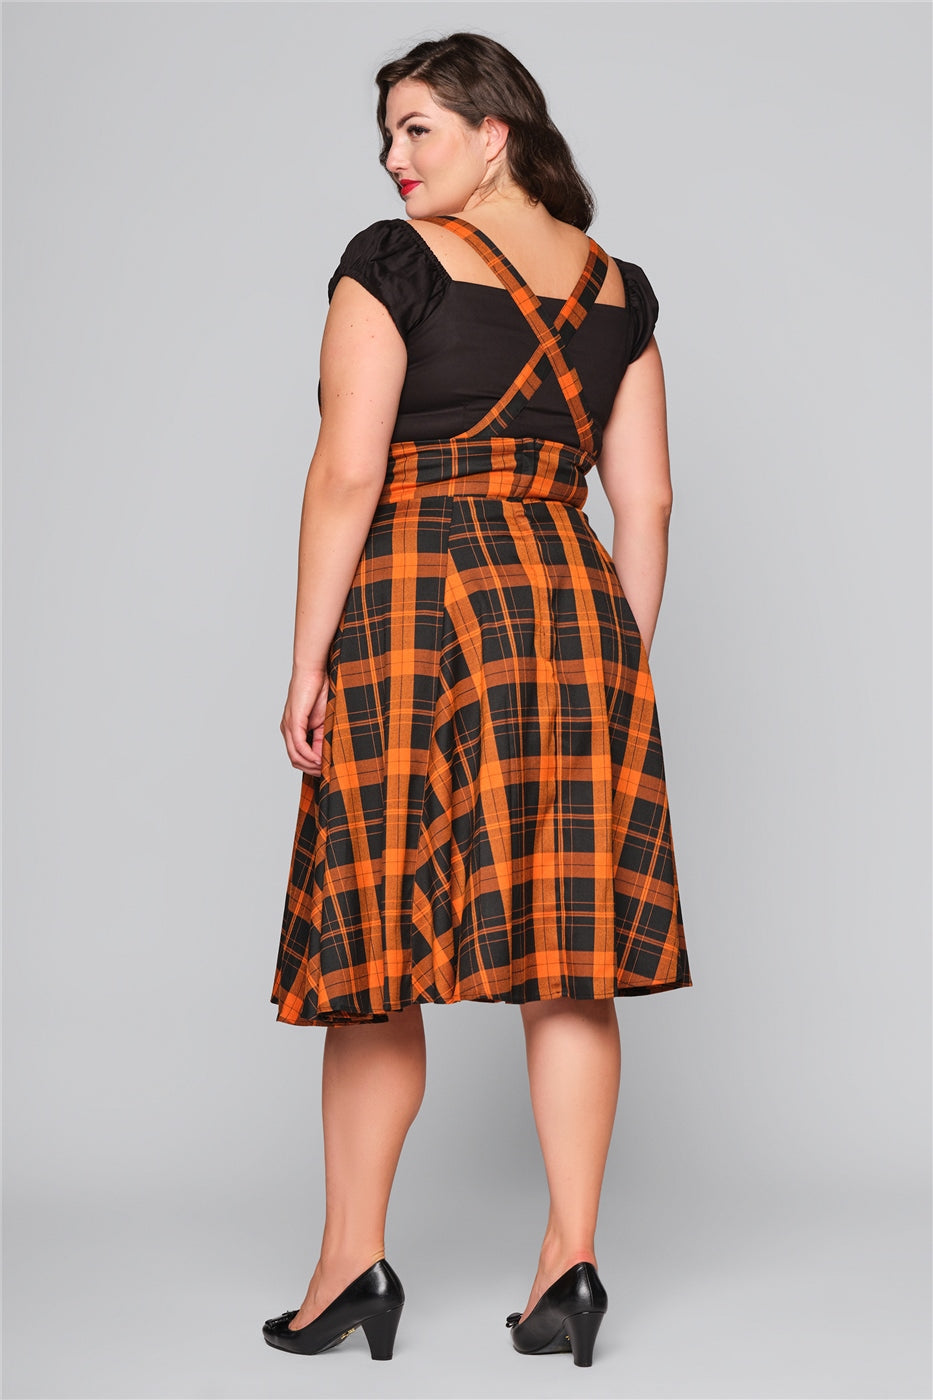 Alexa Pumpkin Check Swing Skirt by Collectif